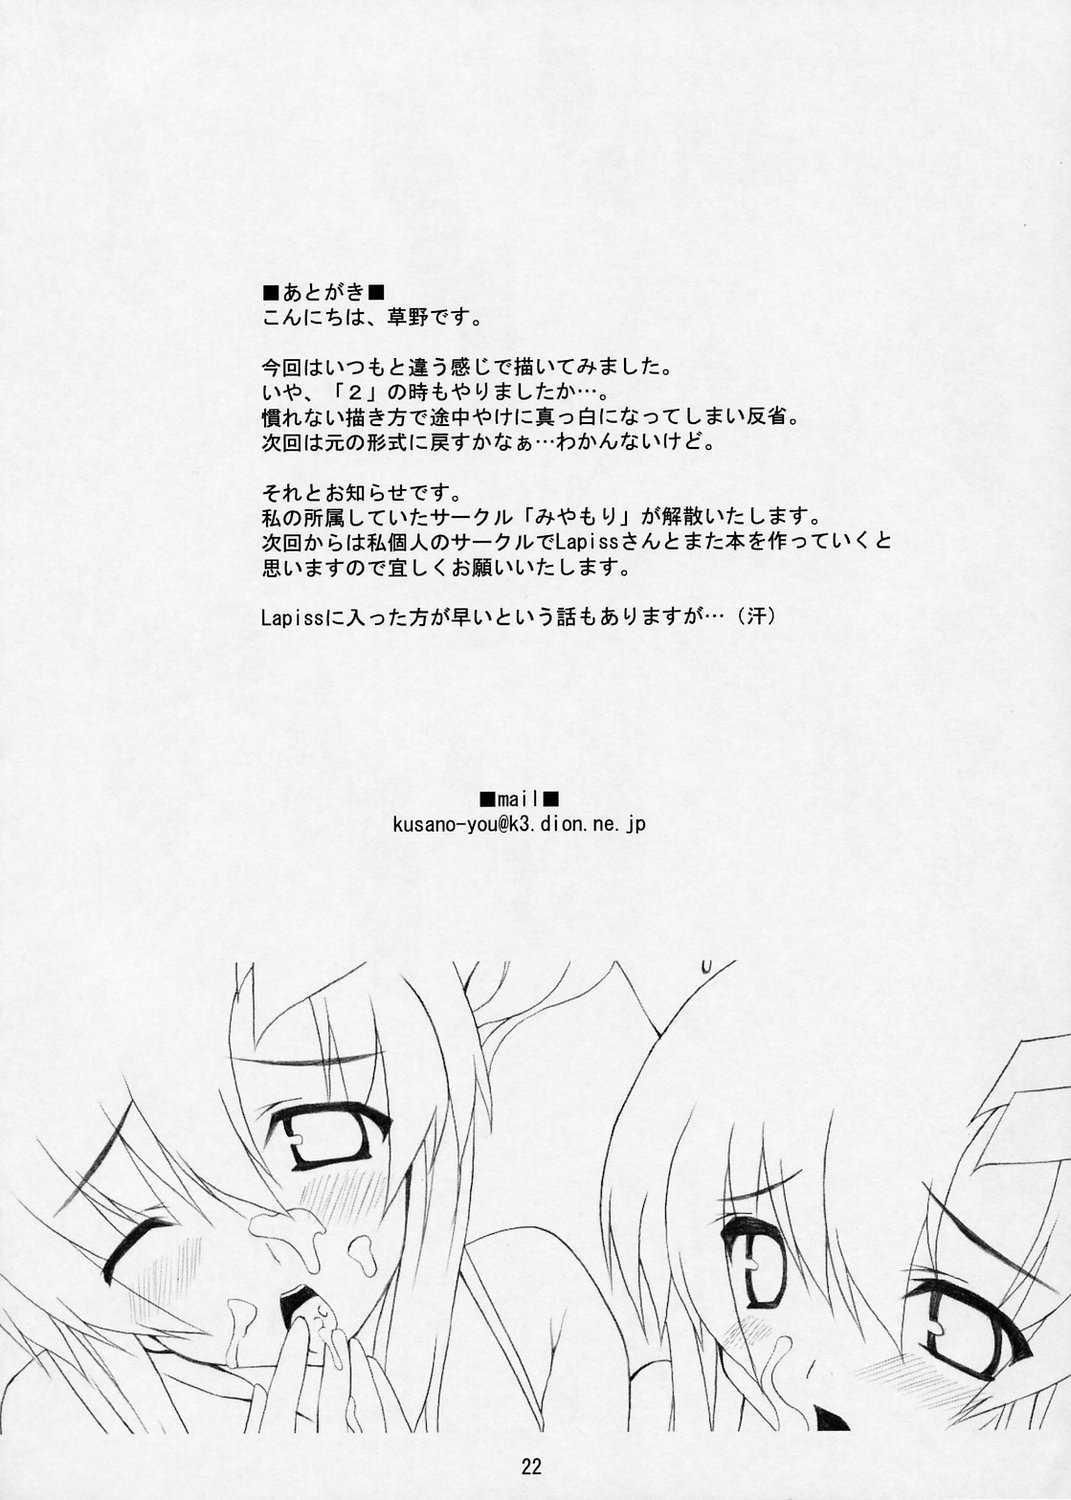 [Lapiss &amp; MiyaMori] Lovely Baby 5 [Gundam Seed Destiny] 